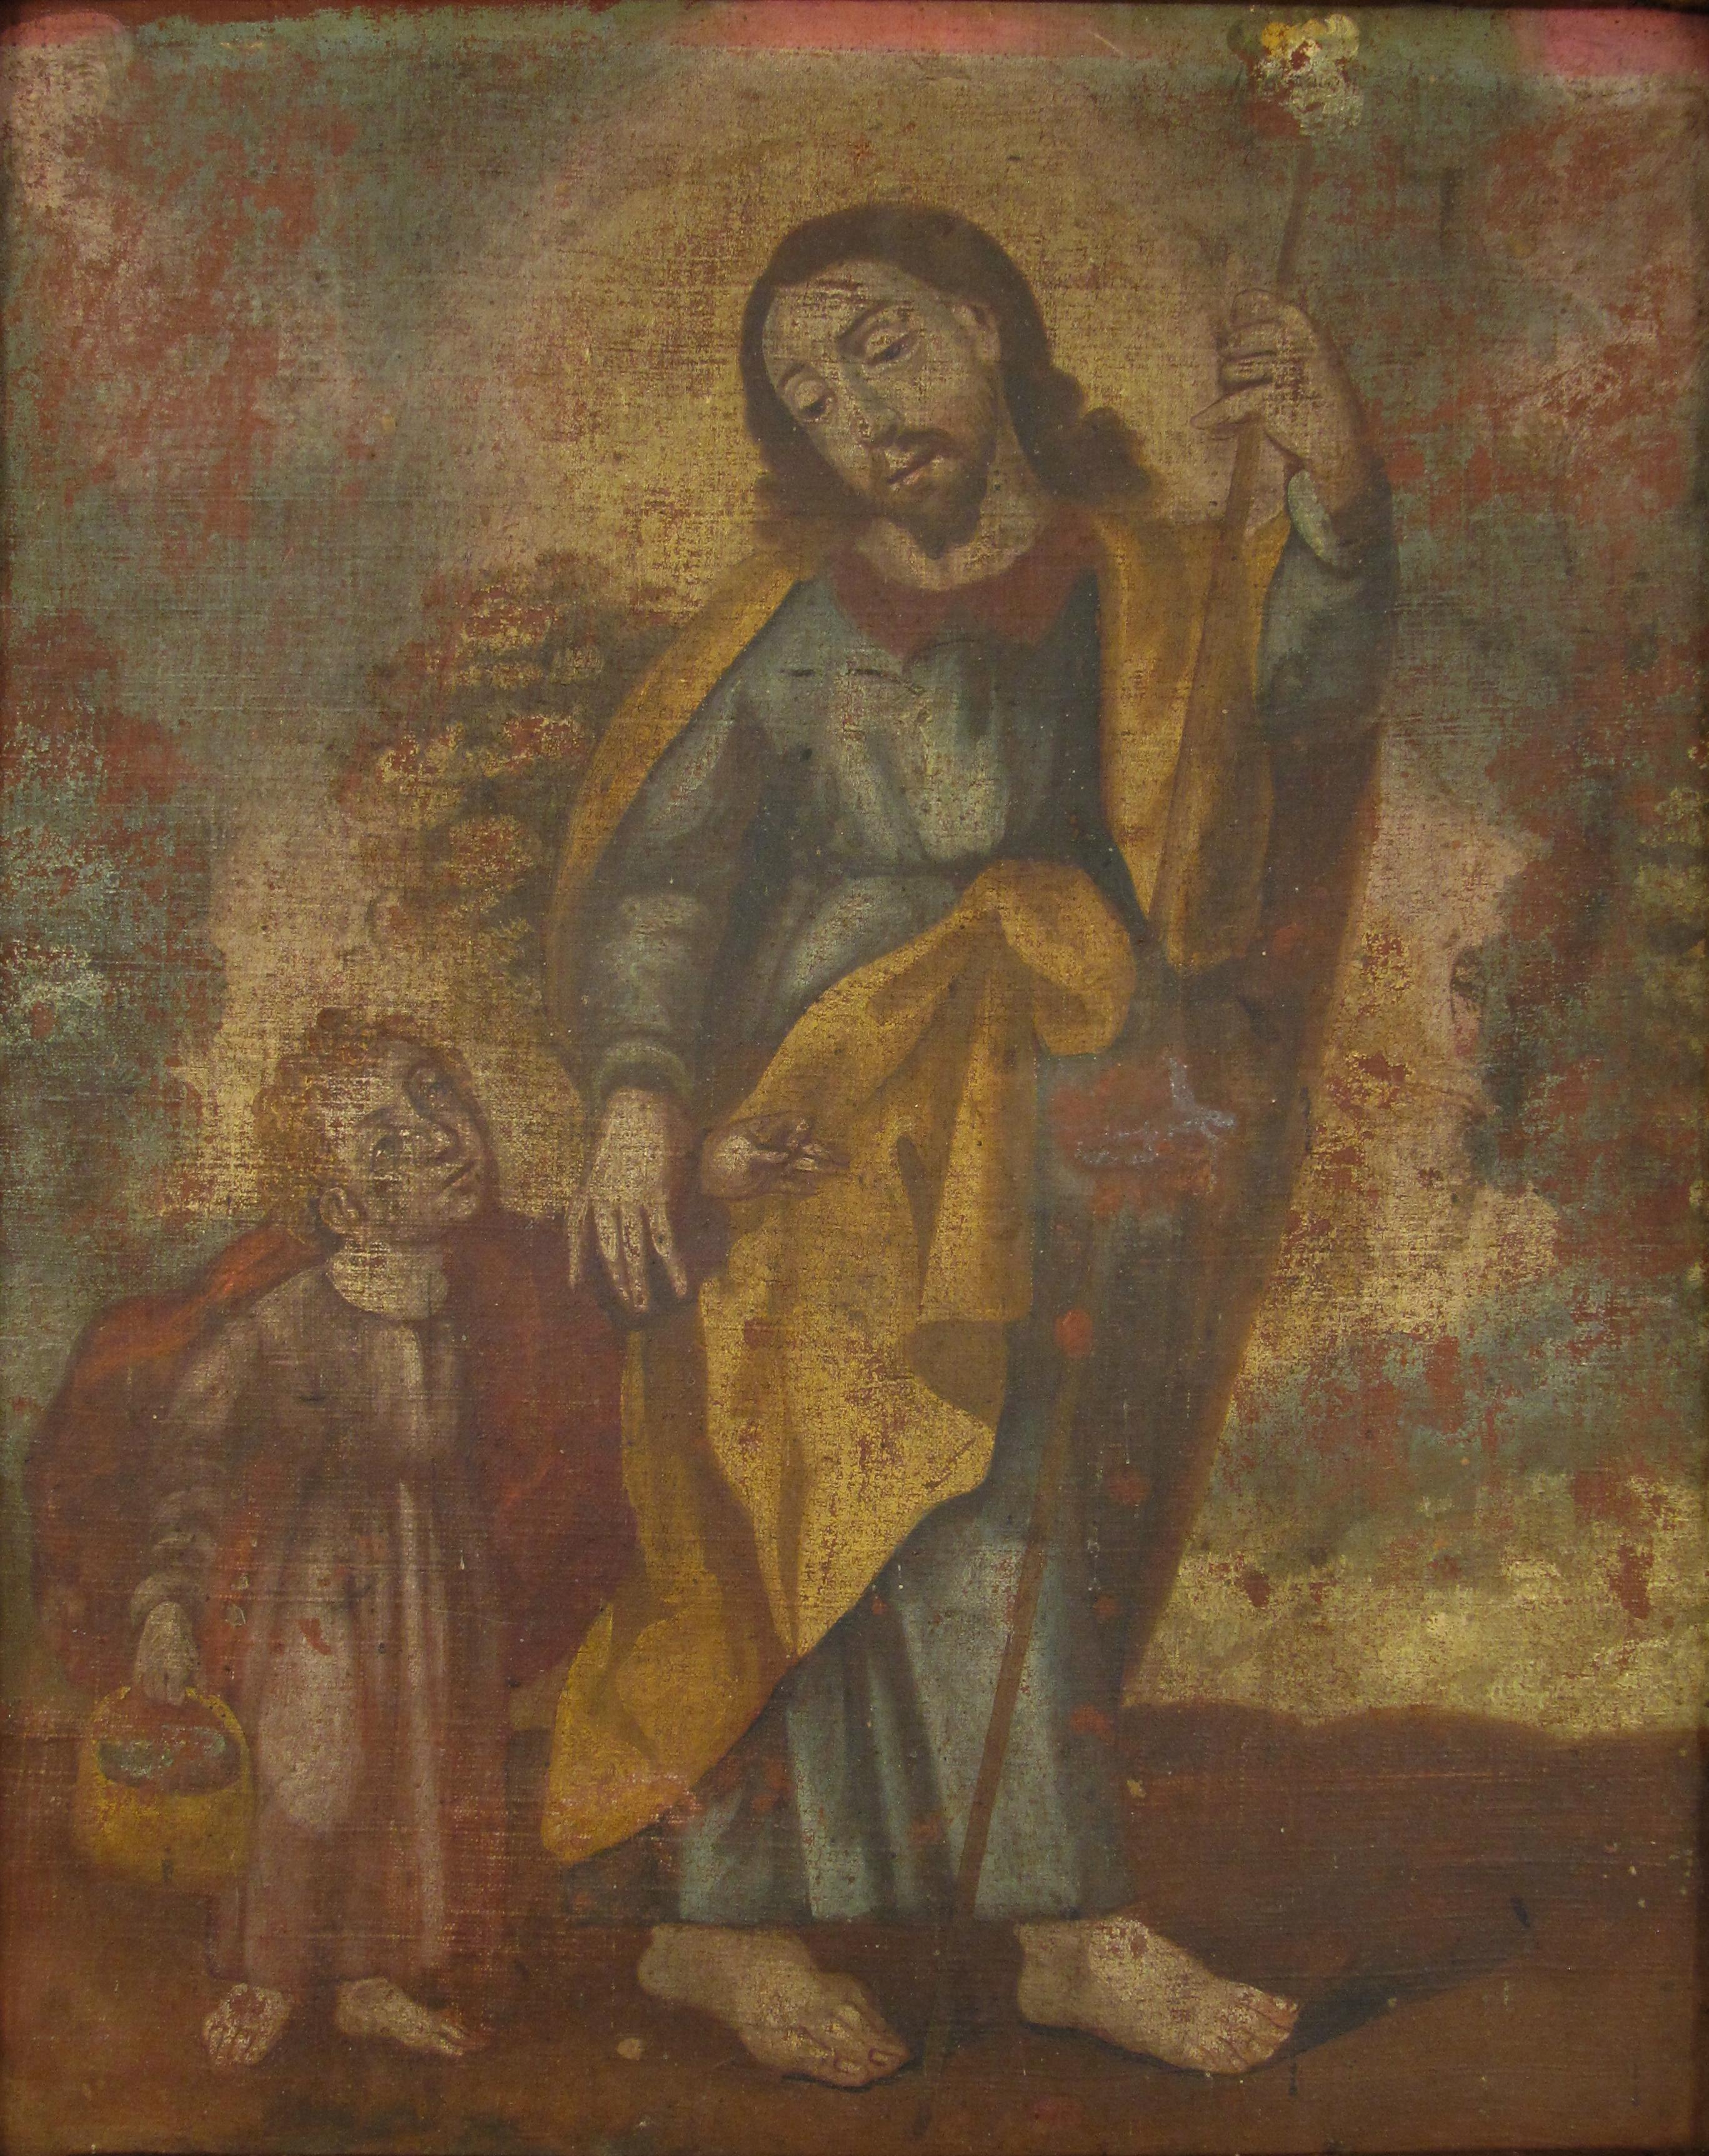 École coloniale espagnole du XVIIe siècle (probablement l'école de Cuzco au Pérou) - Saint Joseph avec l'Enfant Jésus portant un panier, dans son cadre d'origine en bois dur sculpté.

•	Peint à l'huile sur toile (posée sur un panneau de fibres),